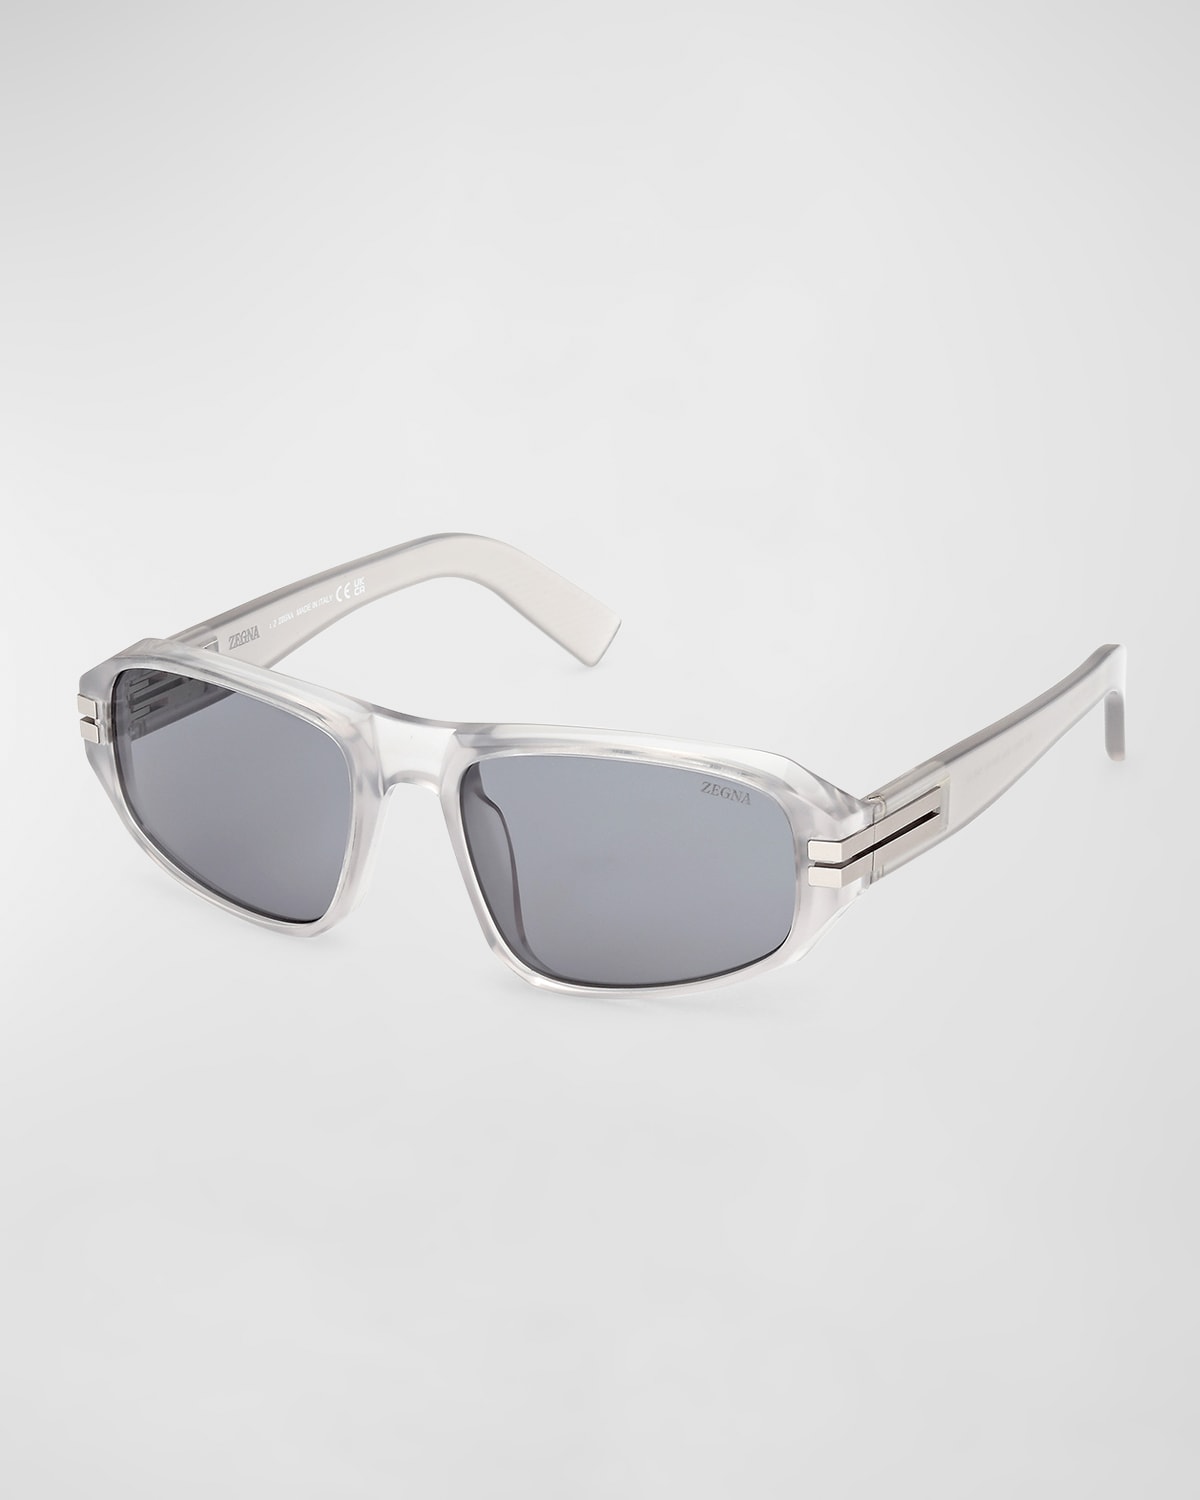 Zegna Men's Polarized Acetate Square Sunglasses In Gray